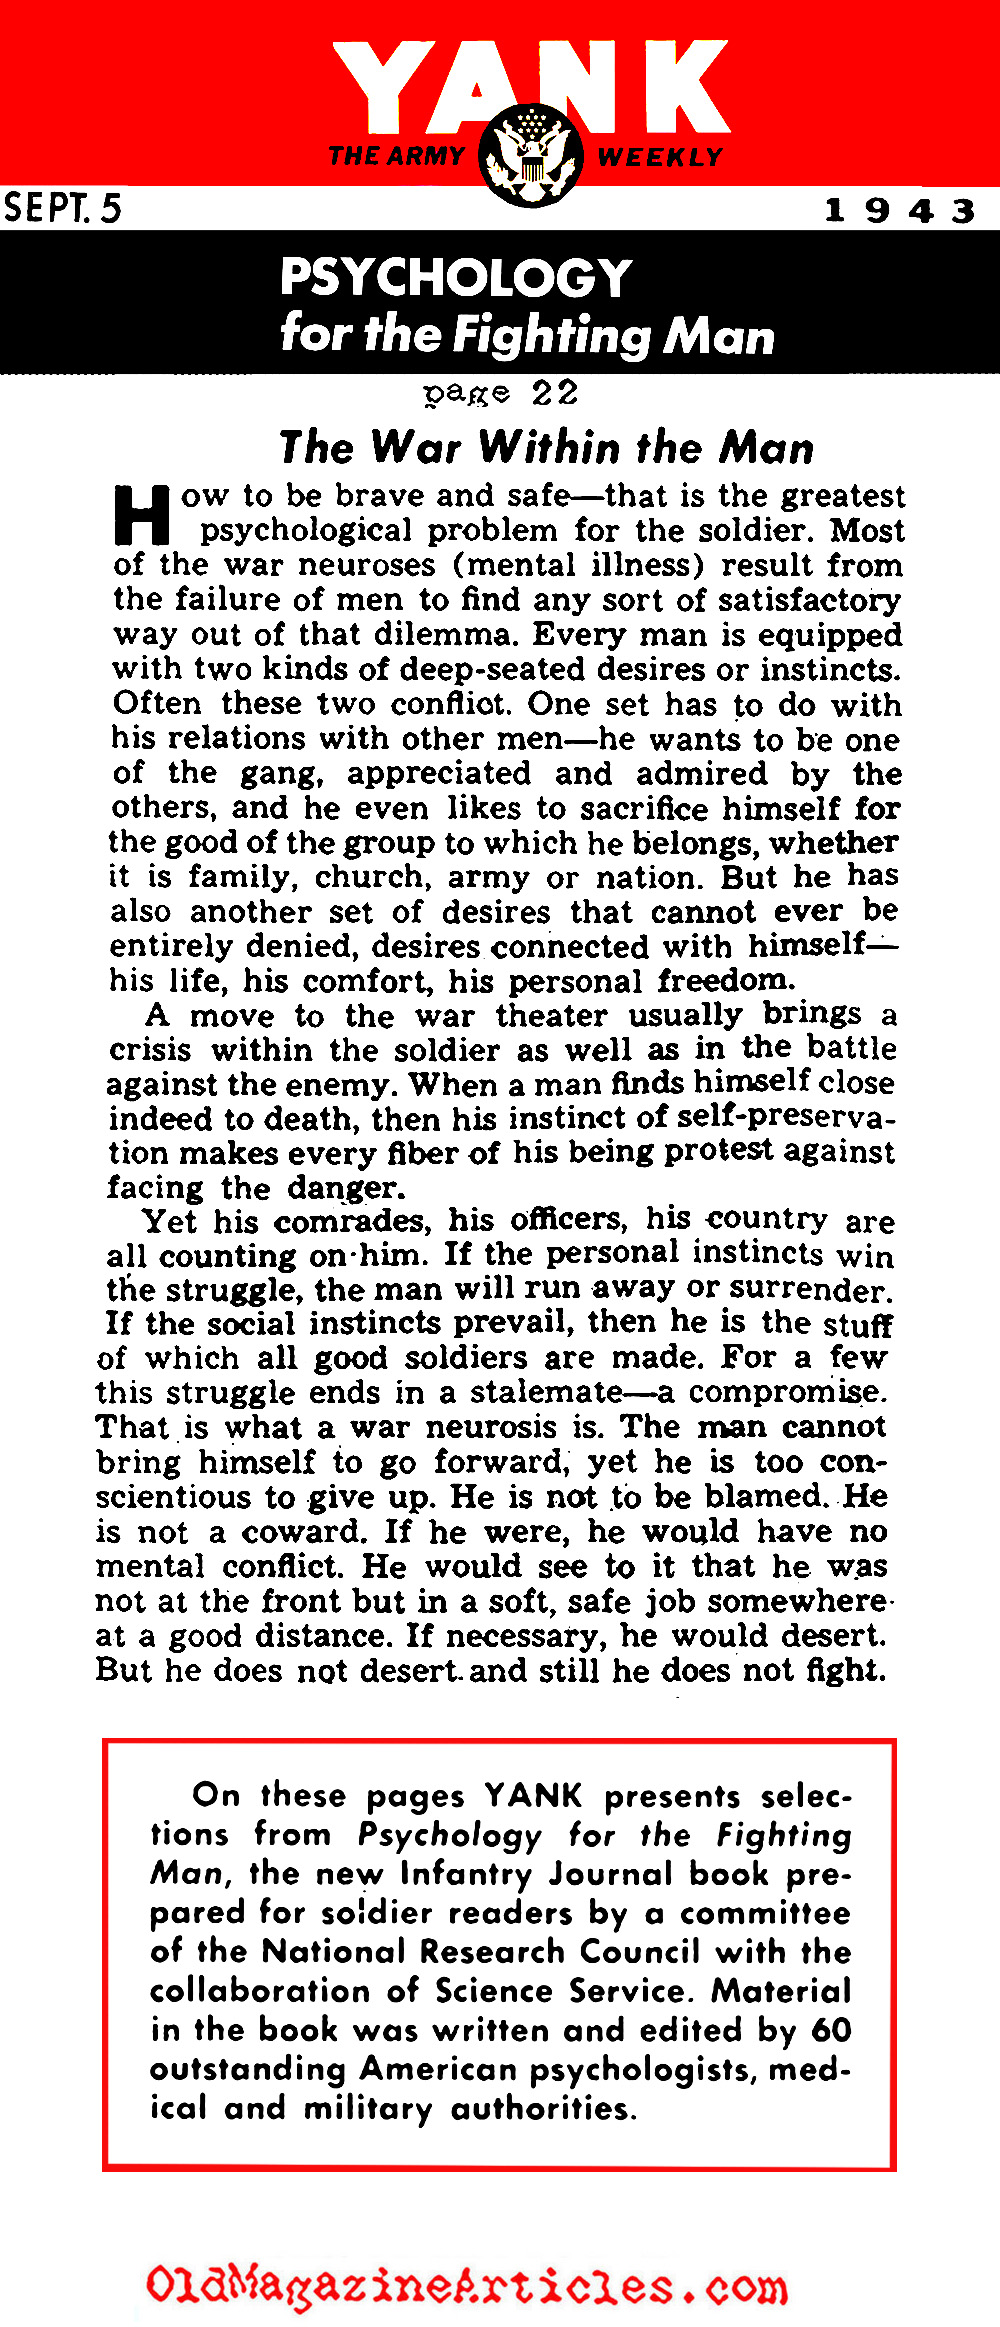 A Psychological Study of Valor (Yank Magazine, 1943)